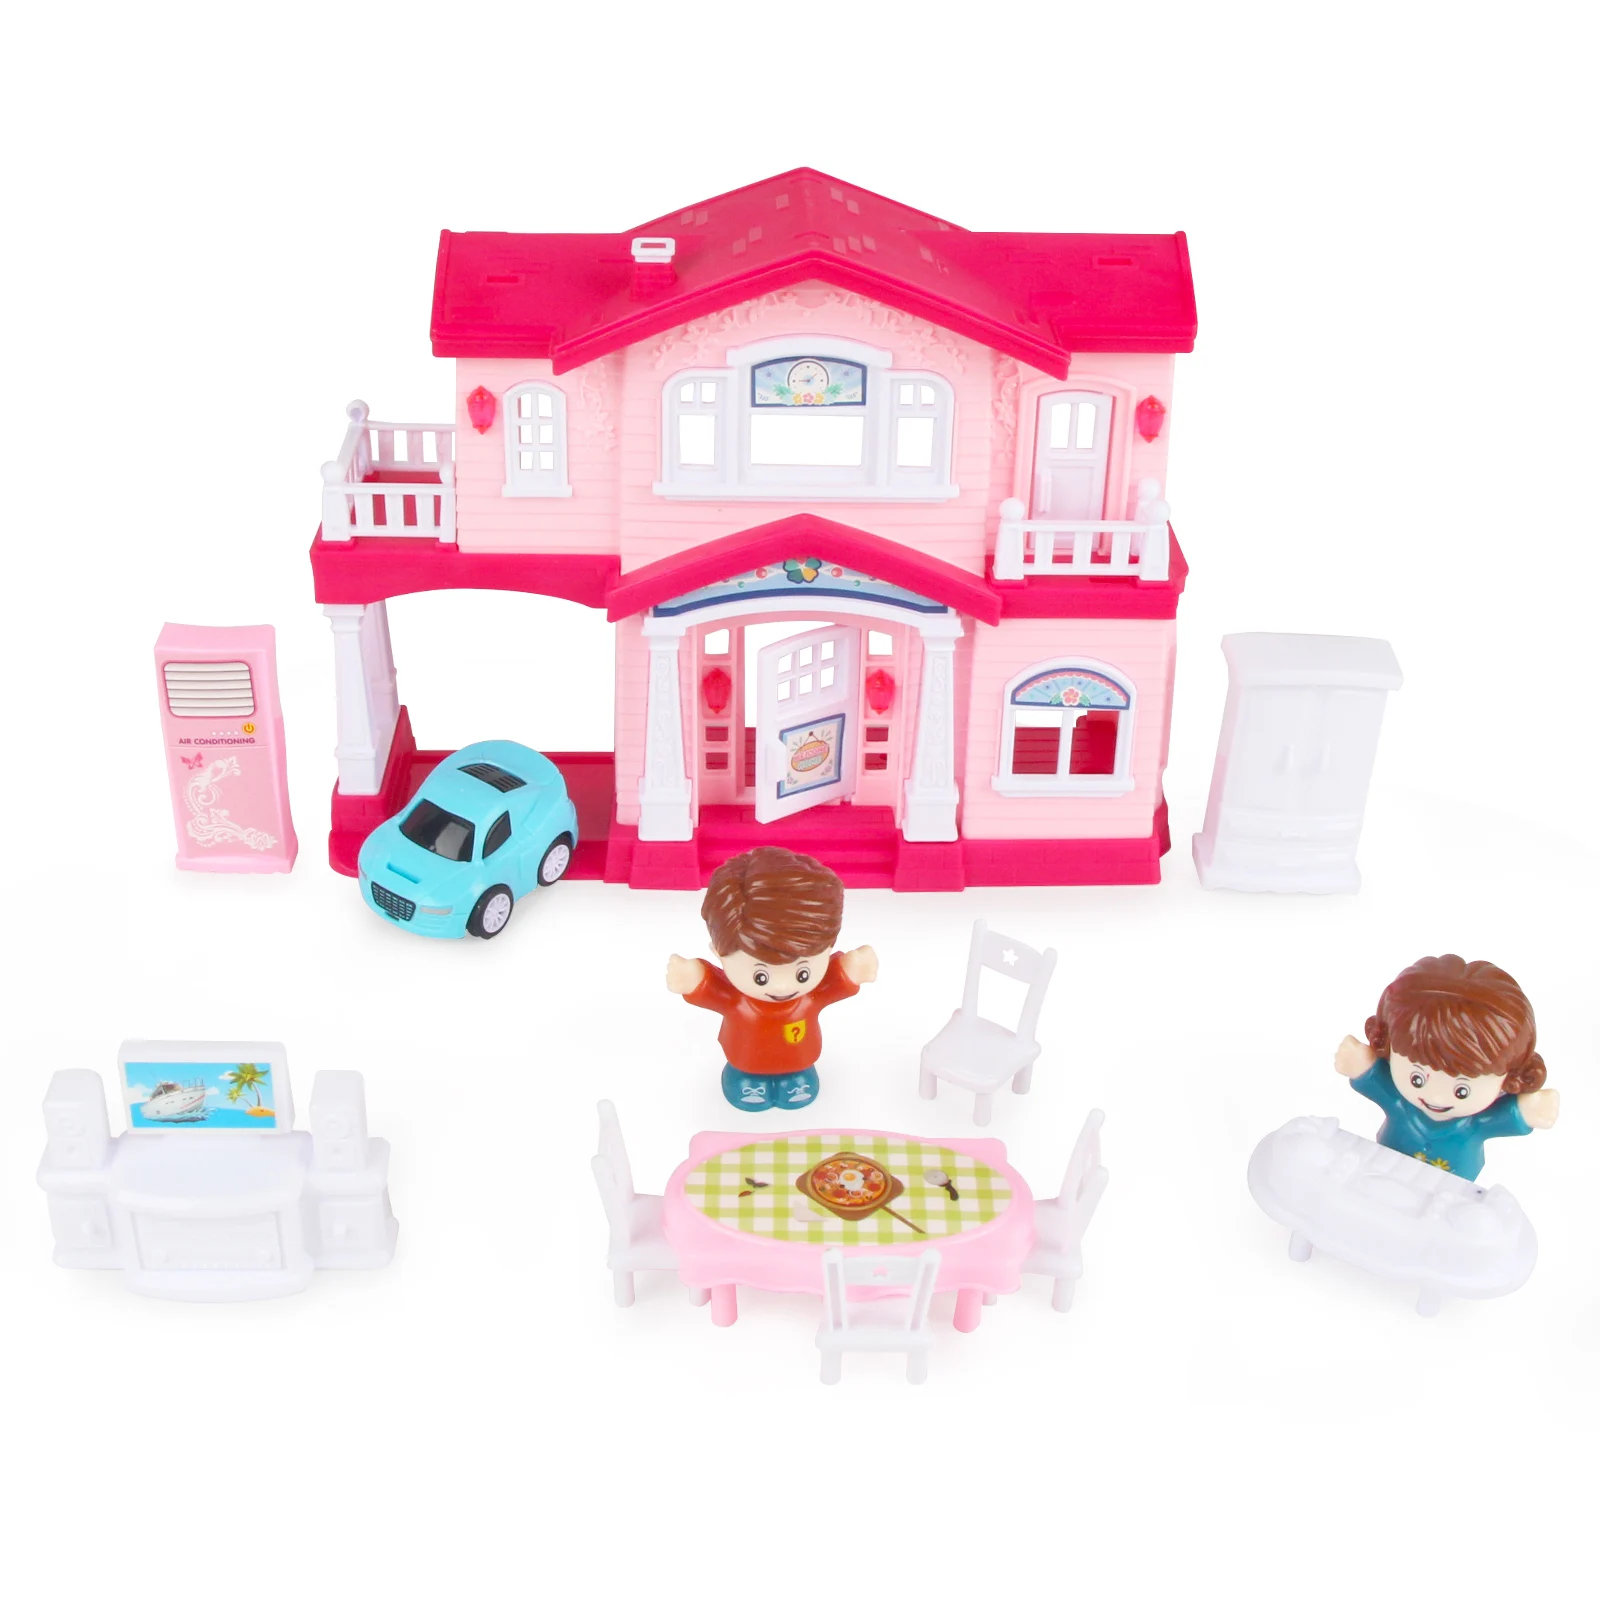 Игровой набор для детского домика 13 В 1 Кукольный дом с мебелью Открывающаяся дверь, свет и звуки дверного звонка Подарок для малышей Девочек от 3 лет +